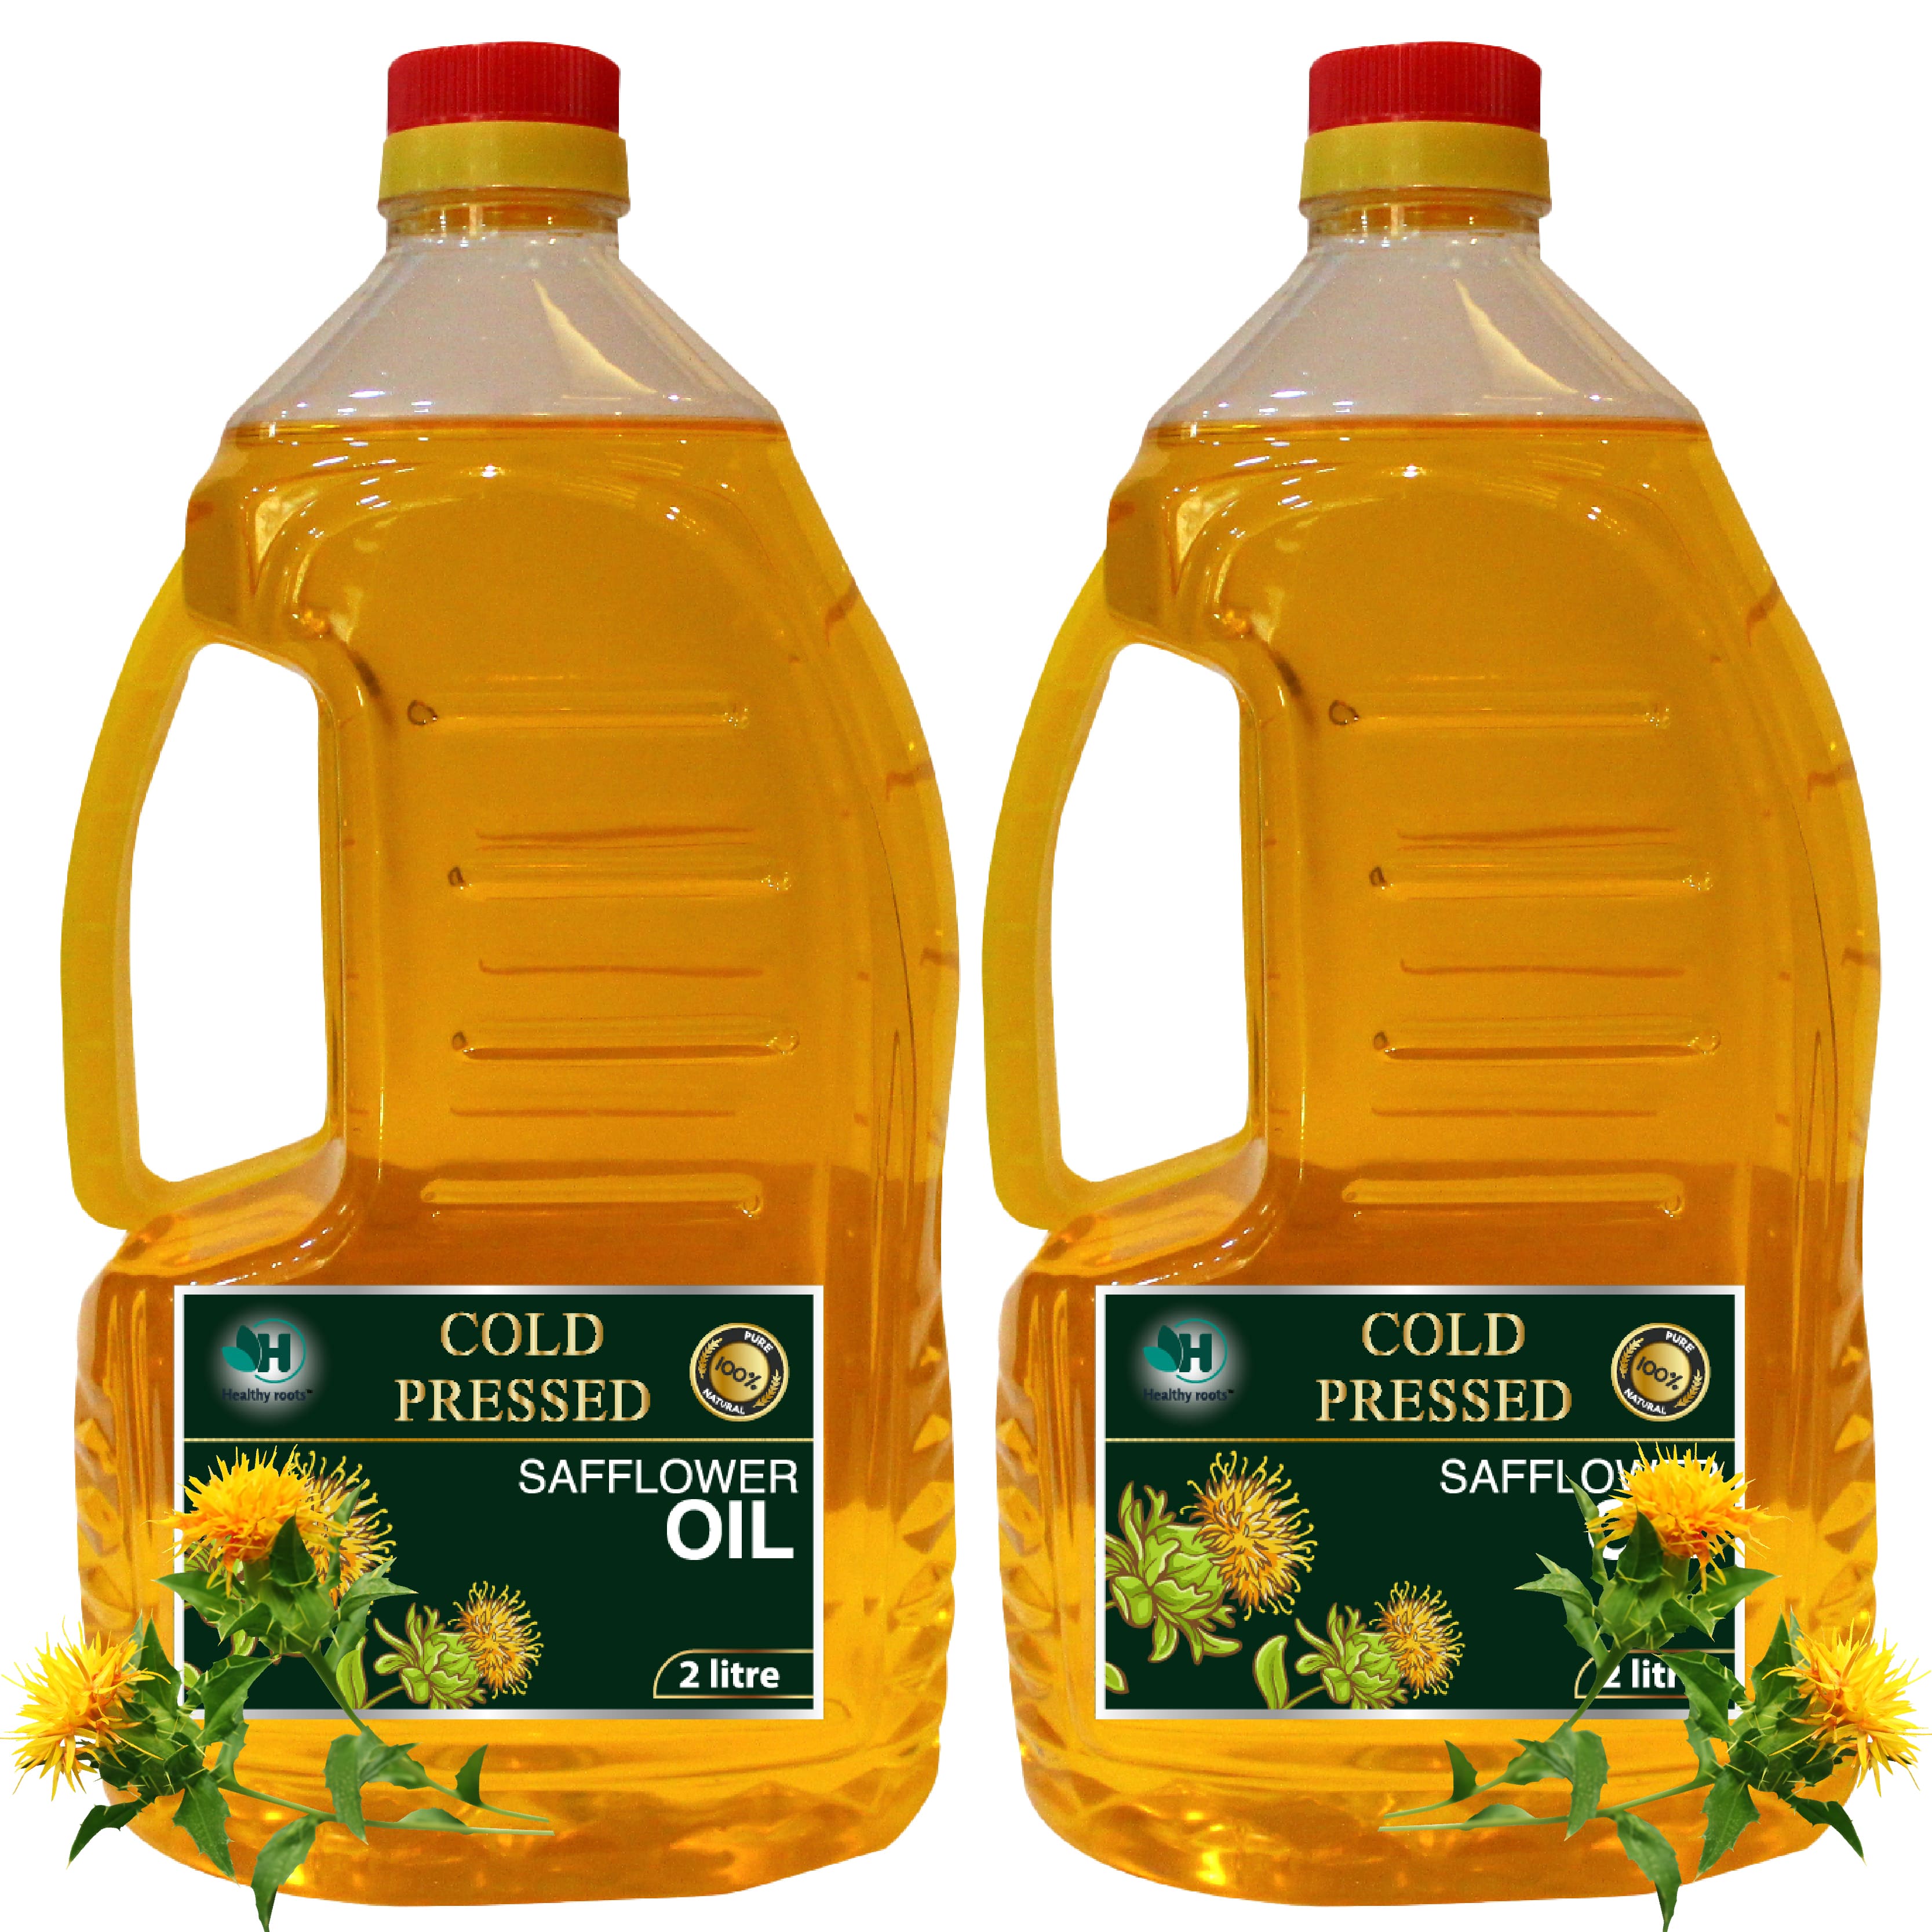 Cold pressed safflower oil 2L